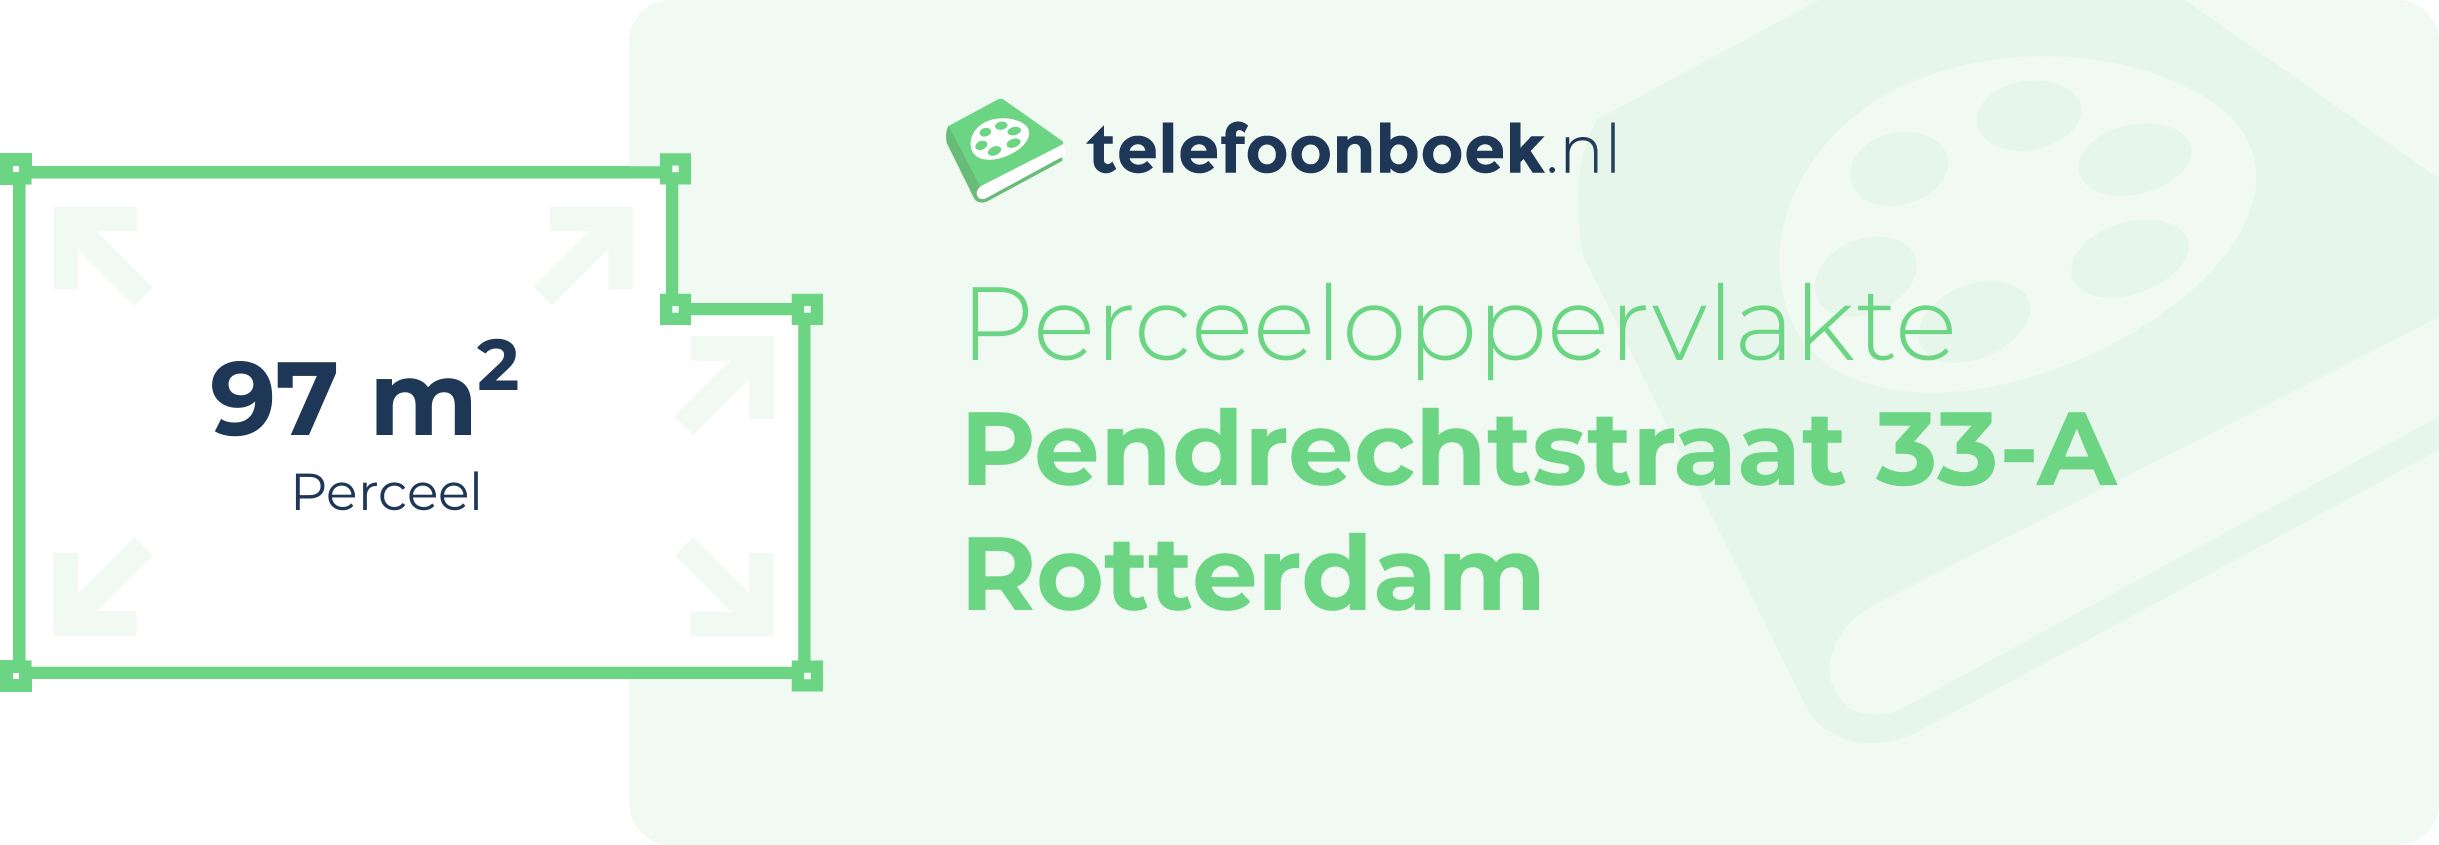 Perceeloppervlakte Pendrechtstraat 33-A Rotterdam